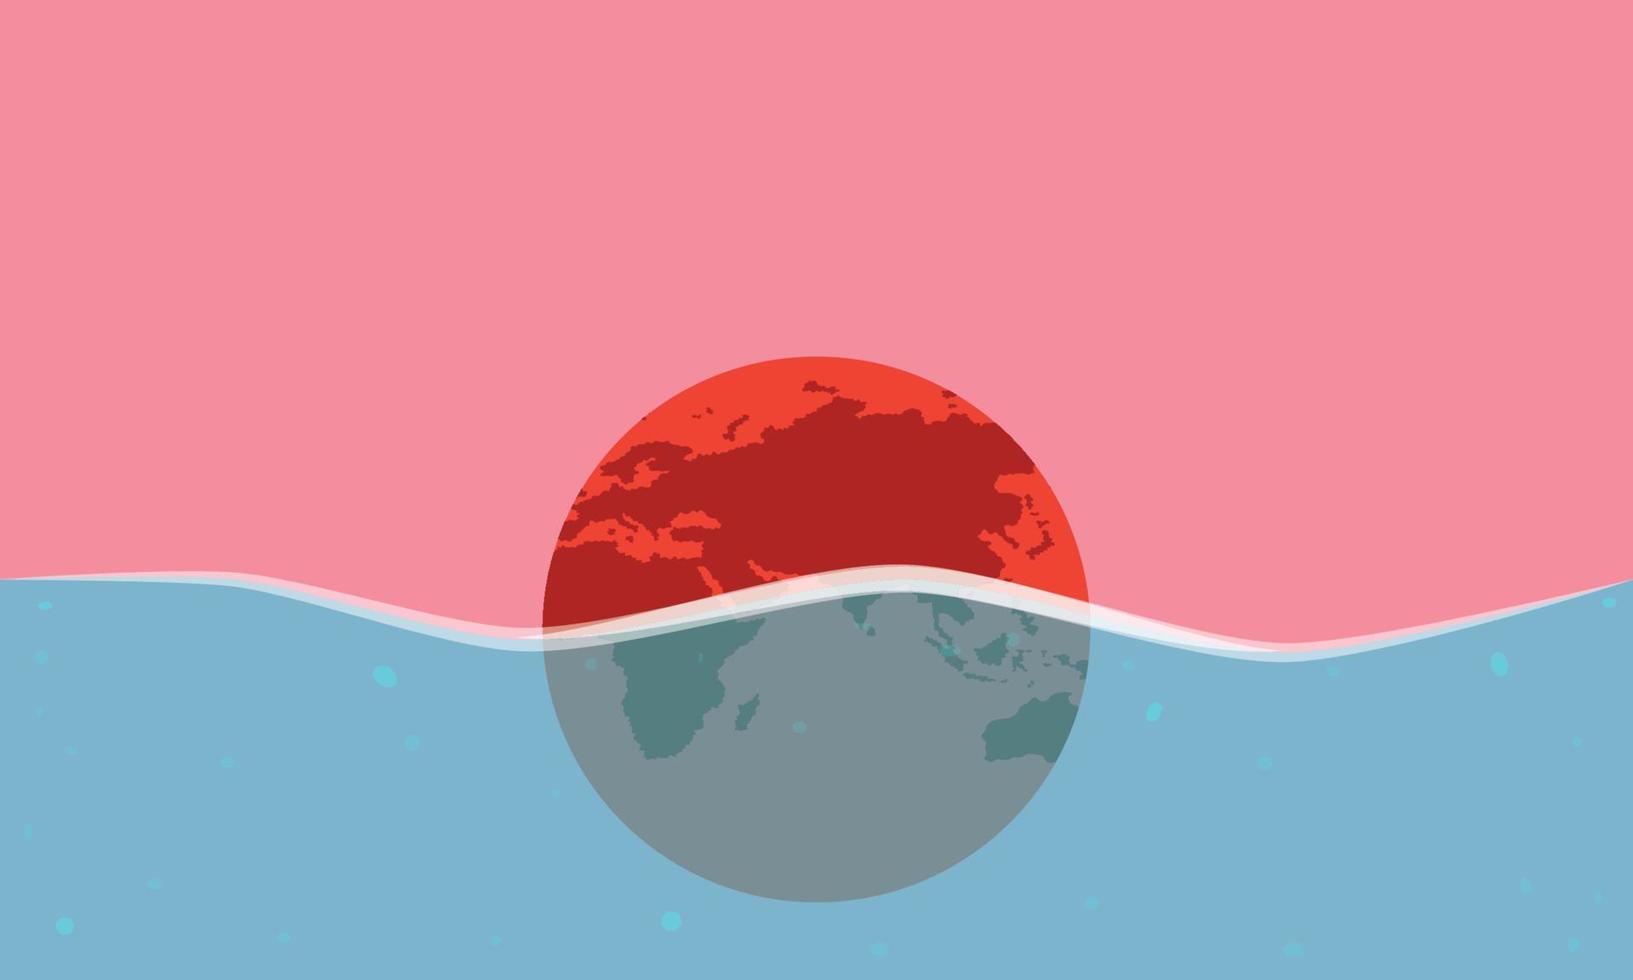 aquecimento global. terra nadando. planeta quente. ilustração vetorial esp10 vetor